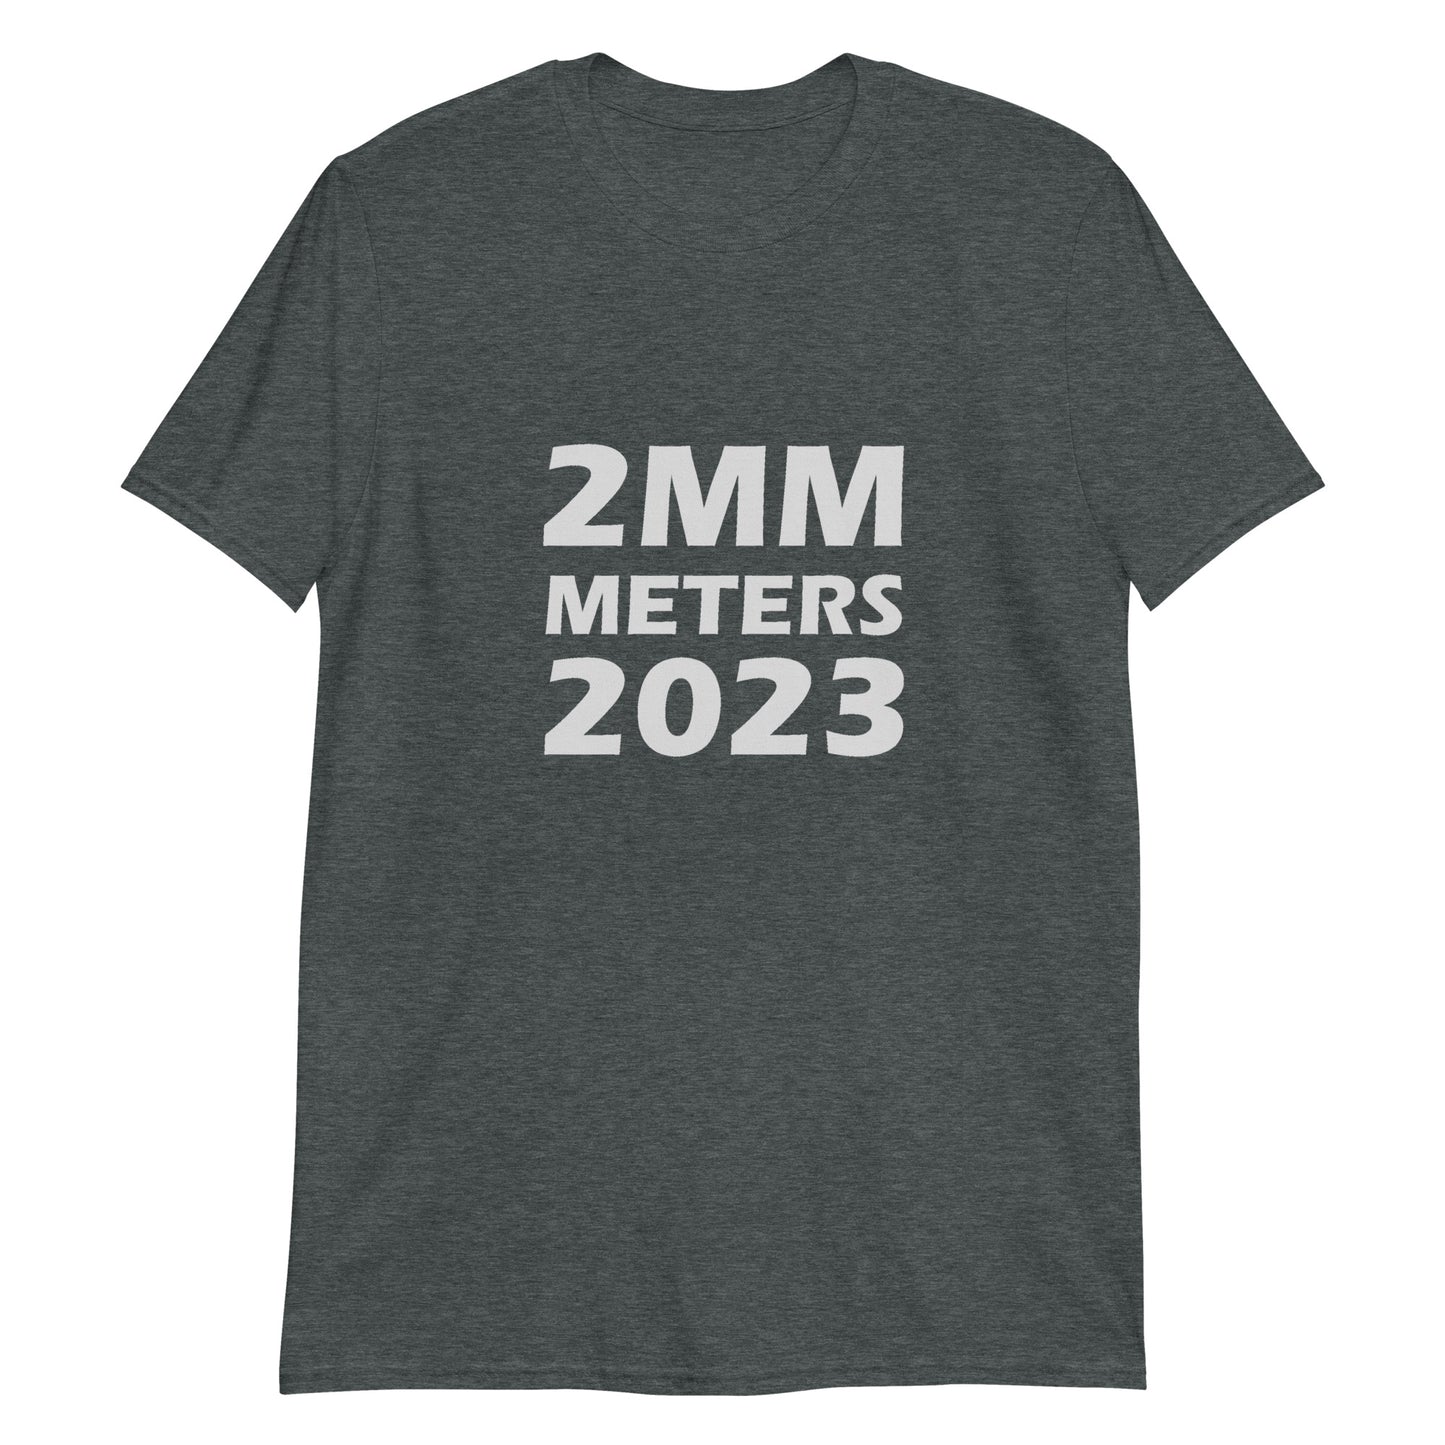 2MM Meters T-Shirt